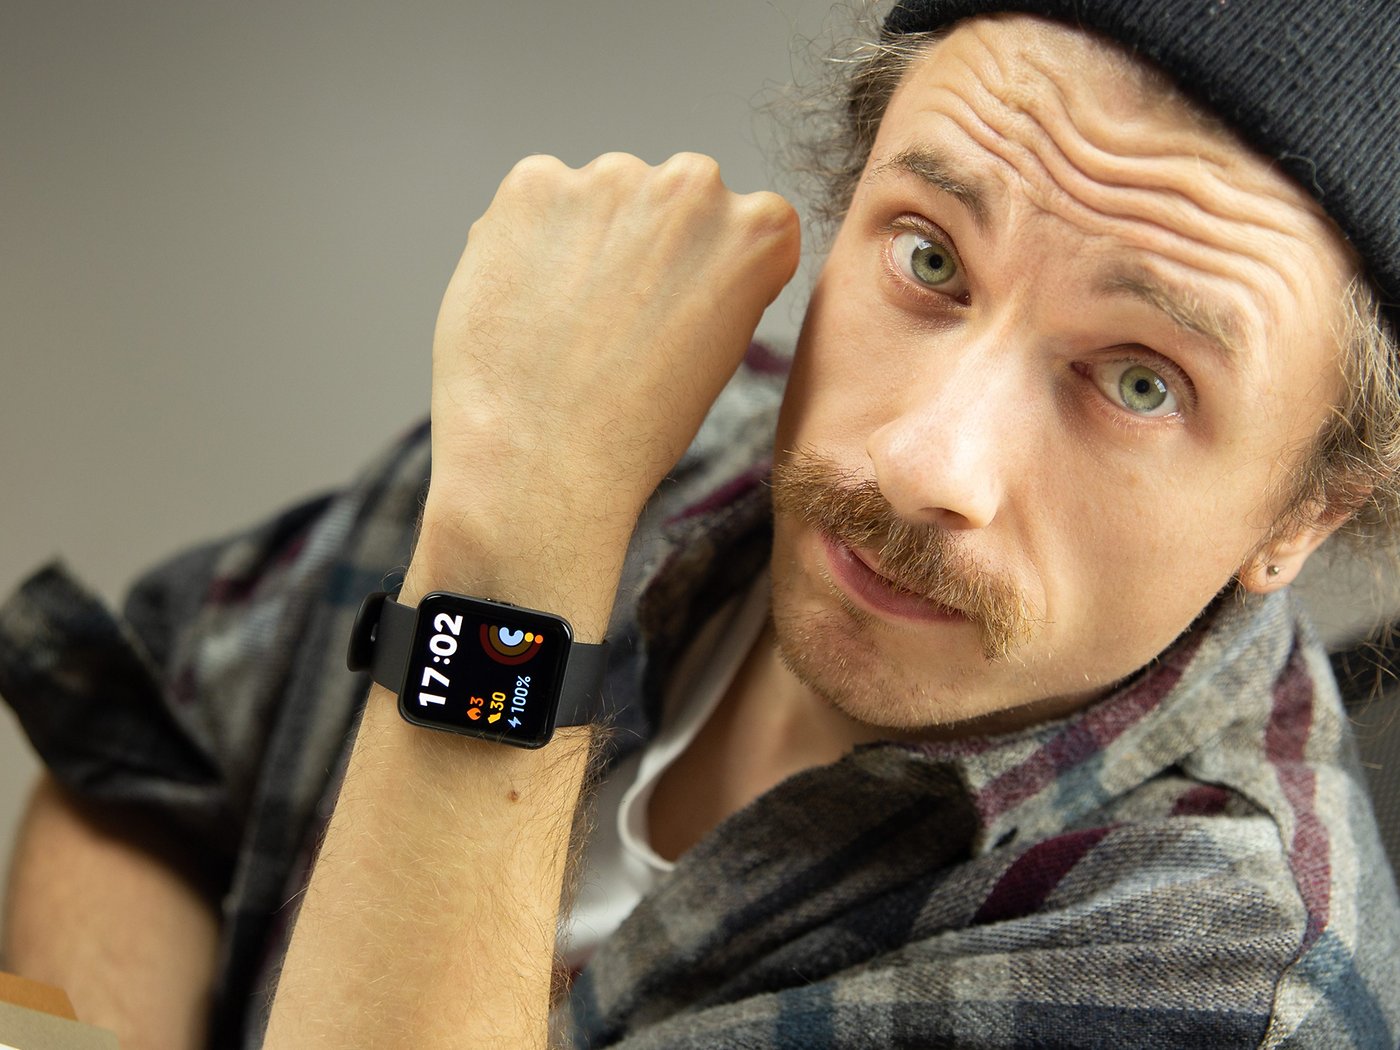 Smartwatch Xiaomi Mi Watch